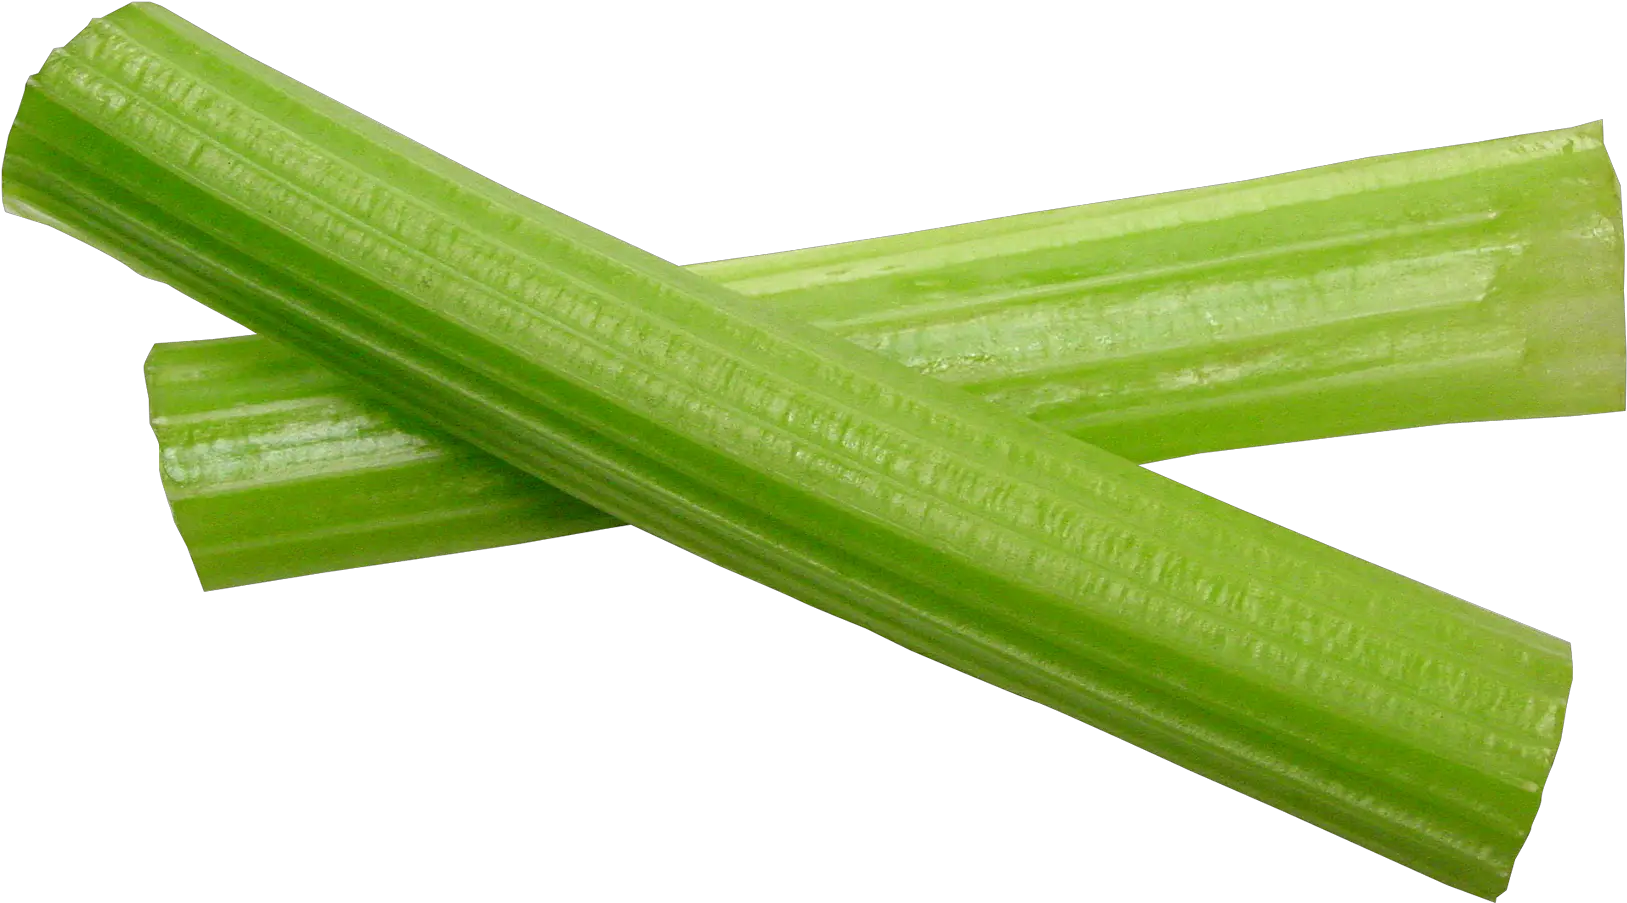 Download Celery Sticks Png Image For Free Celery Stalk Celery Clipart Sticks Png